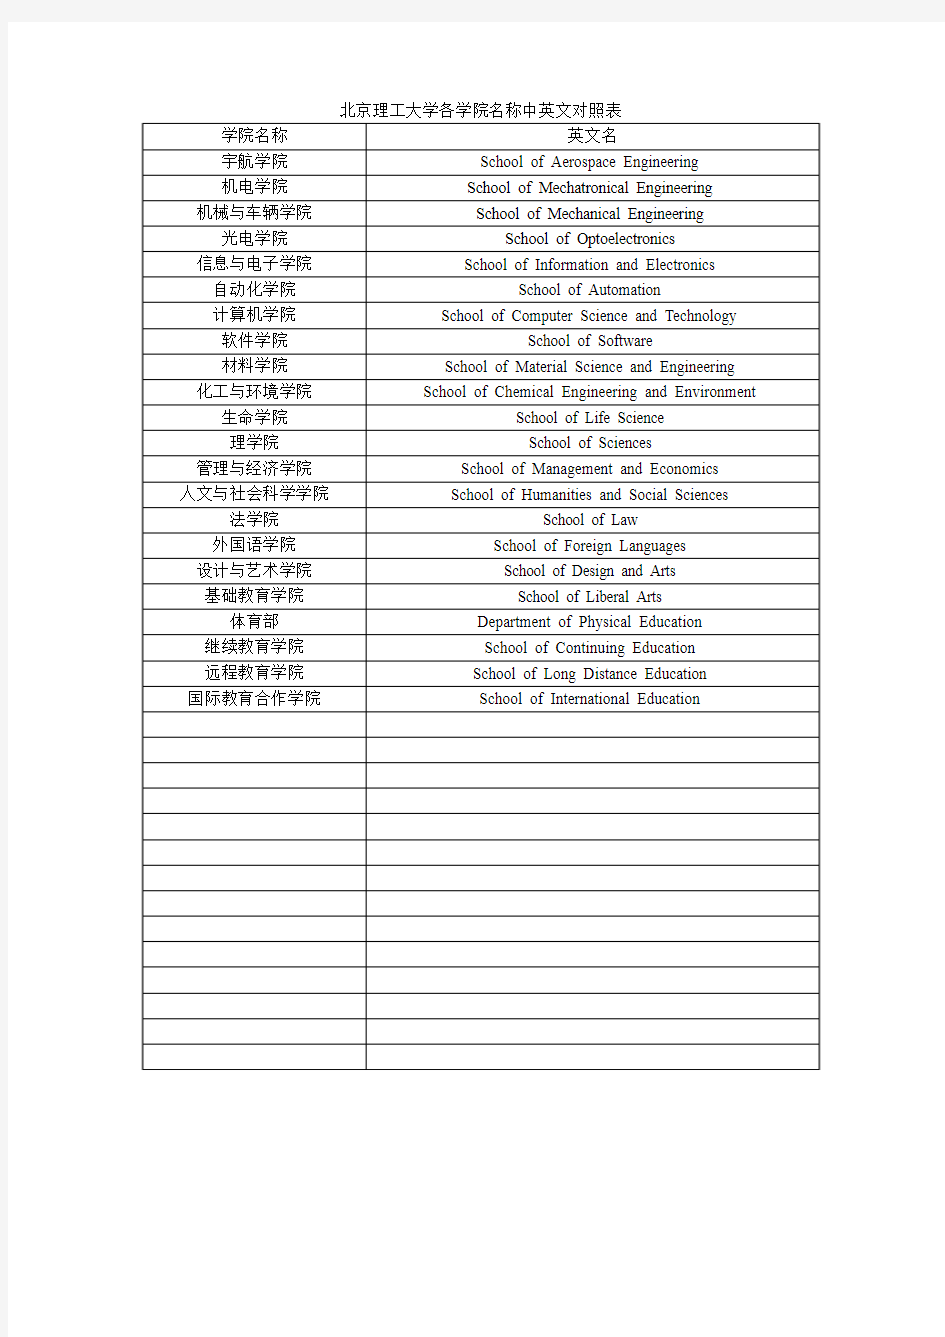 北京理工大学各学院名称中英文对照表